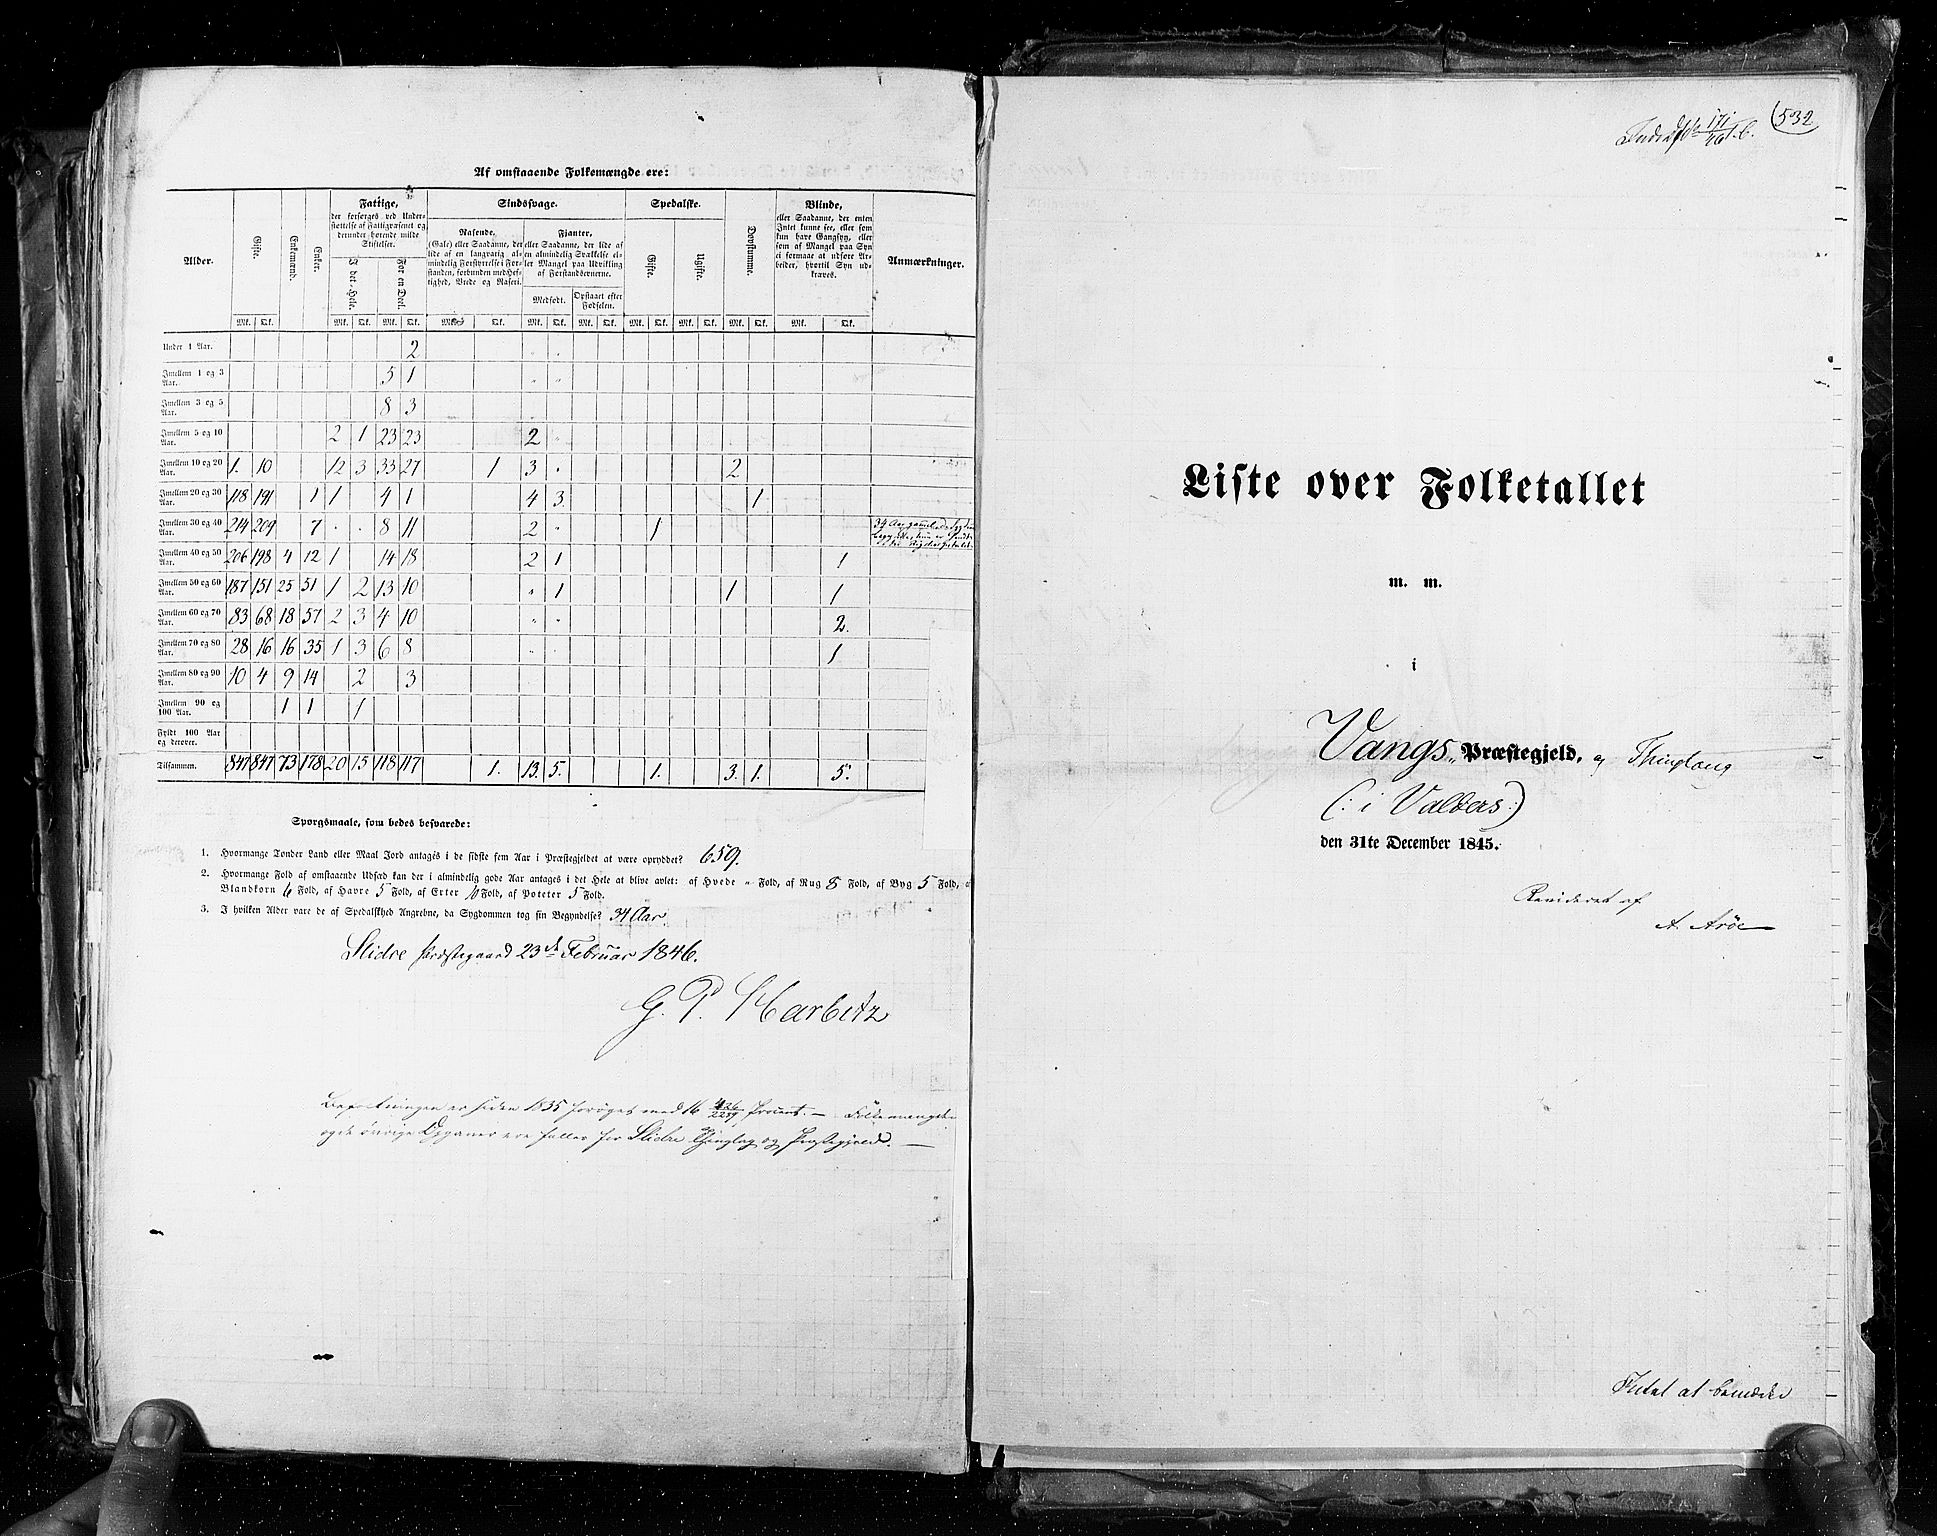 RA, Folketellingen 1845, bind 3: Hedemarken amt og Kristians amt, 1845, s. 532